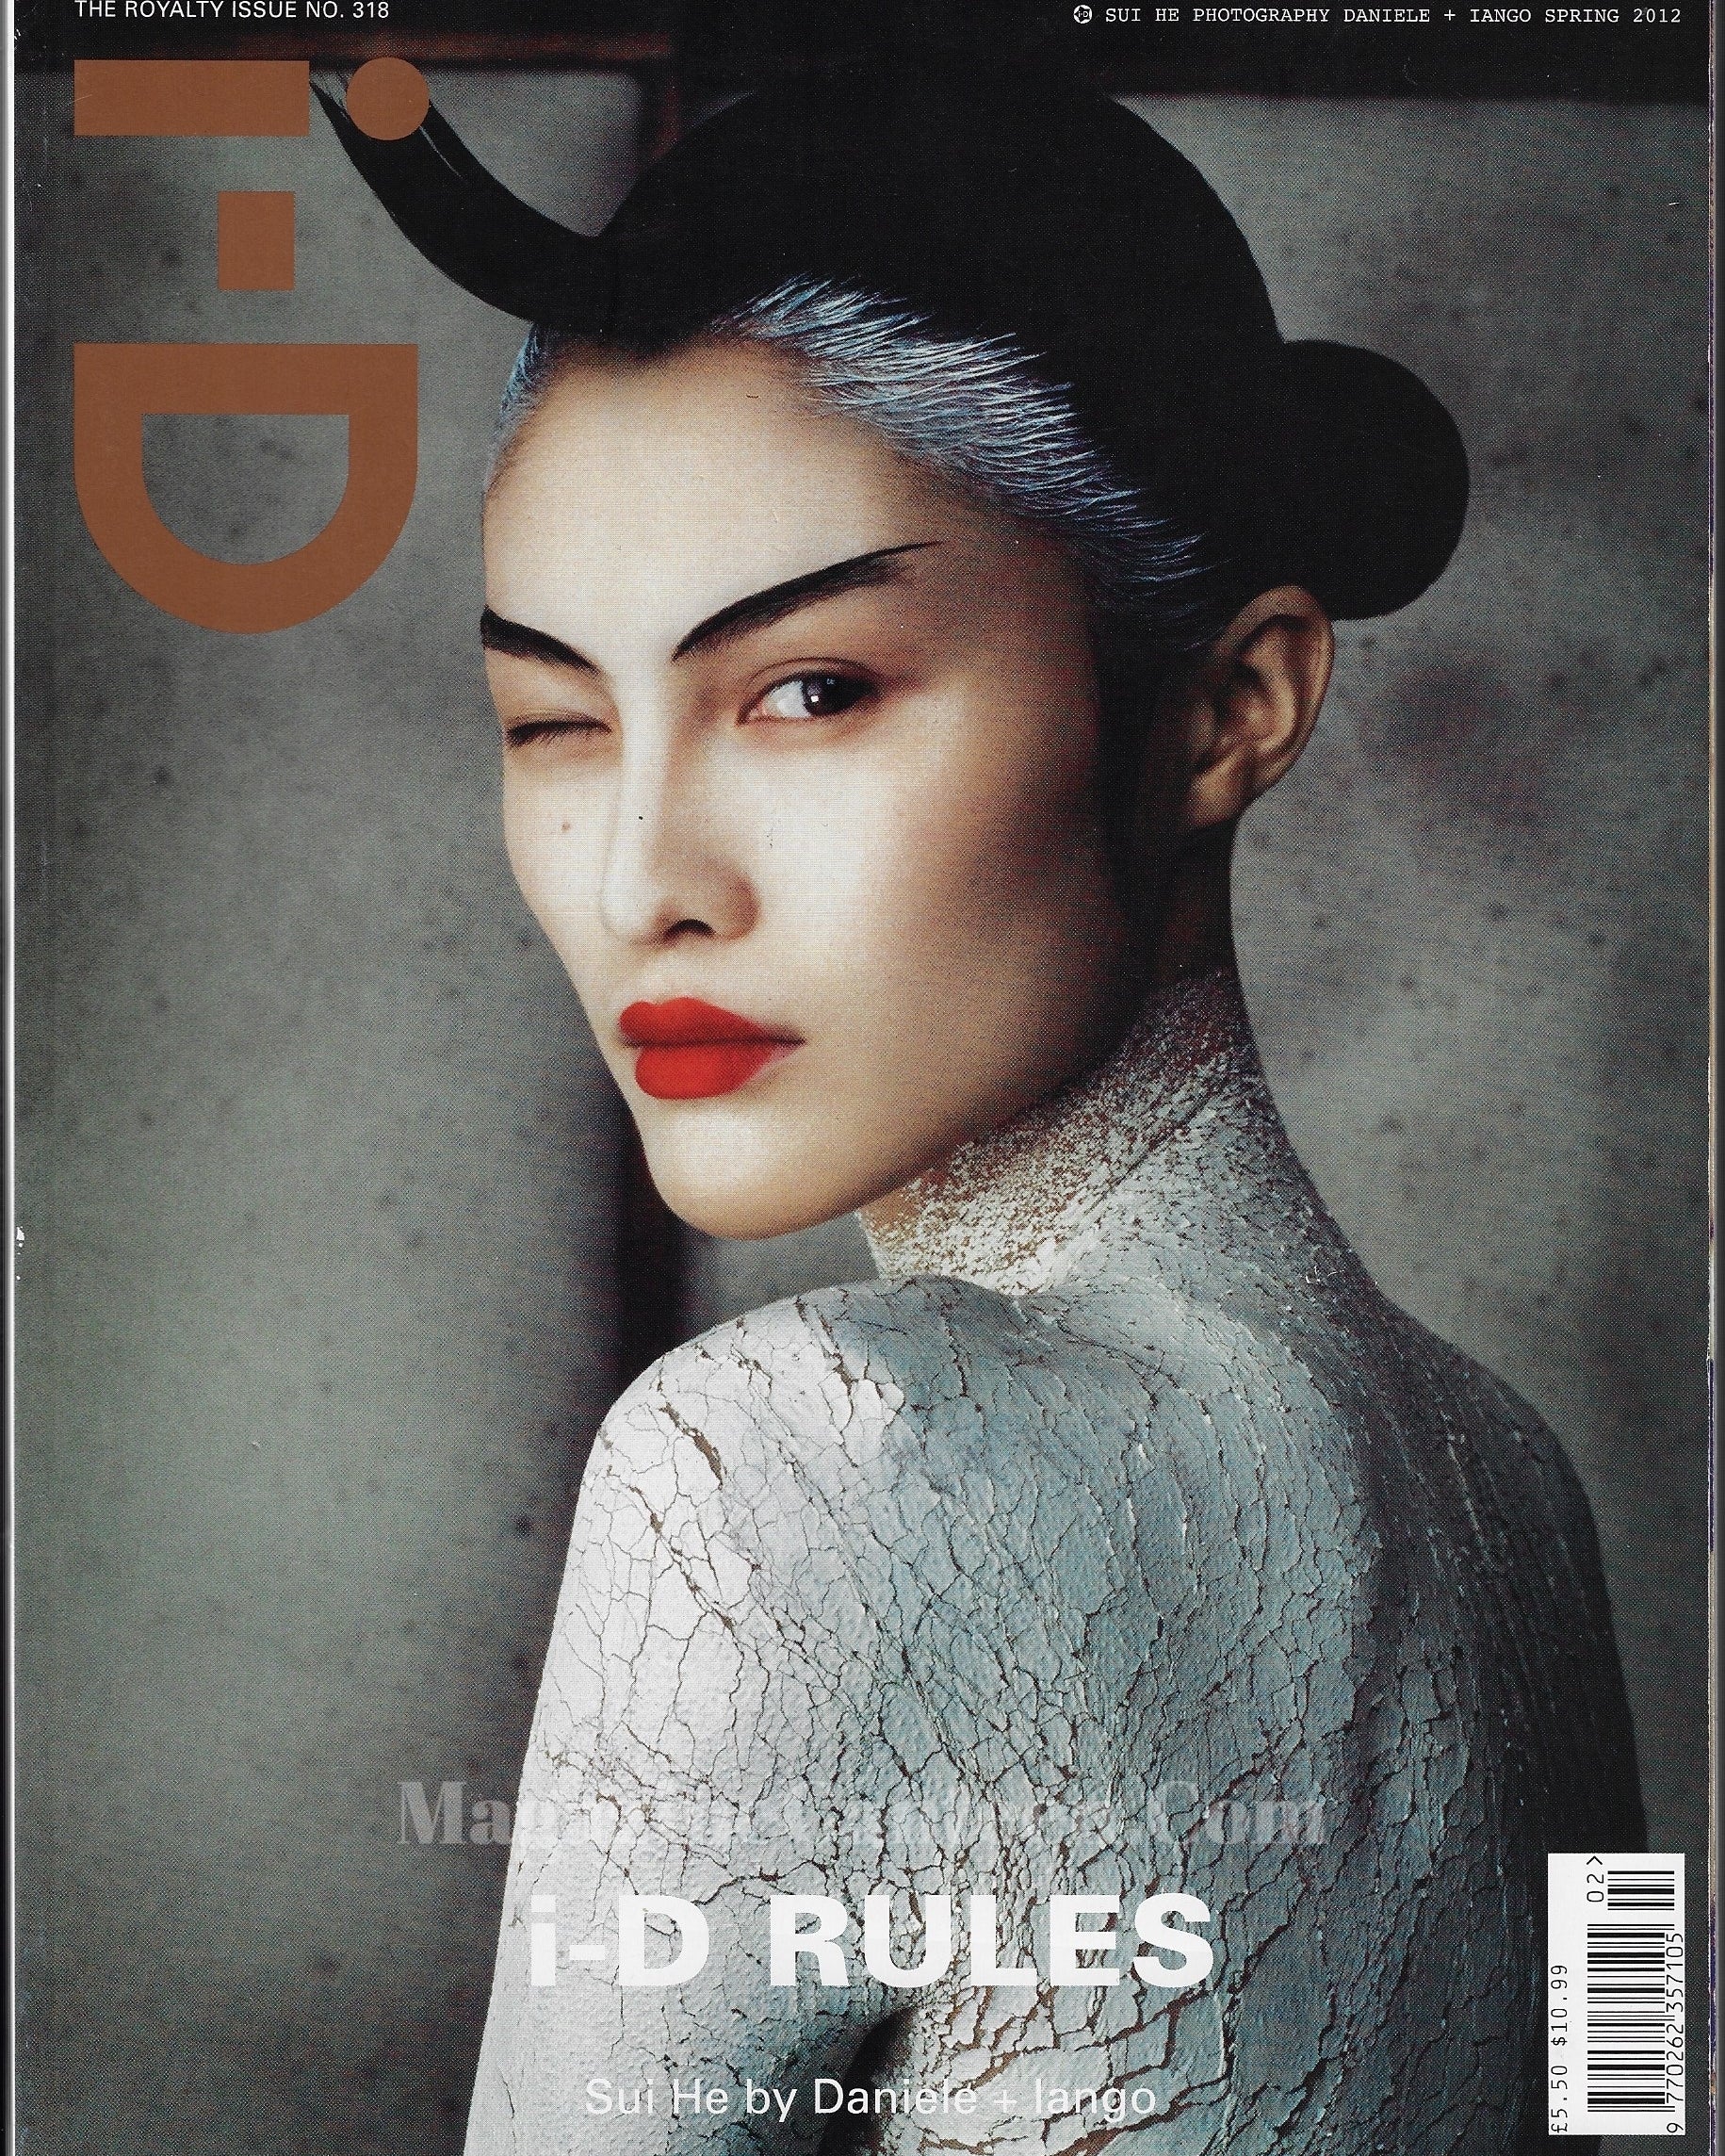 I-D Magazine 318 - Sui He 2012